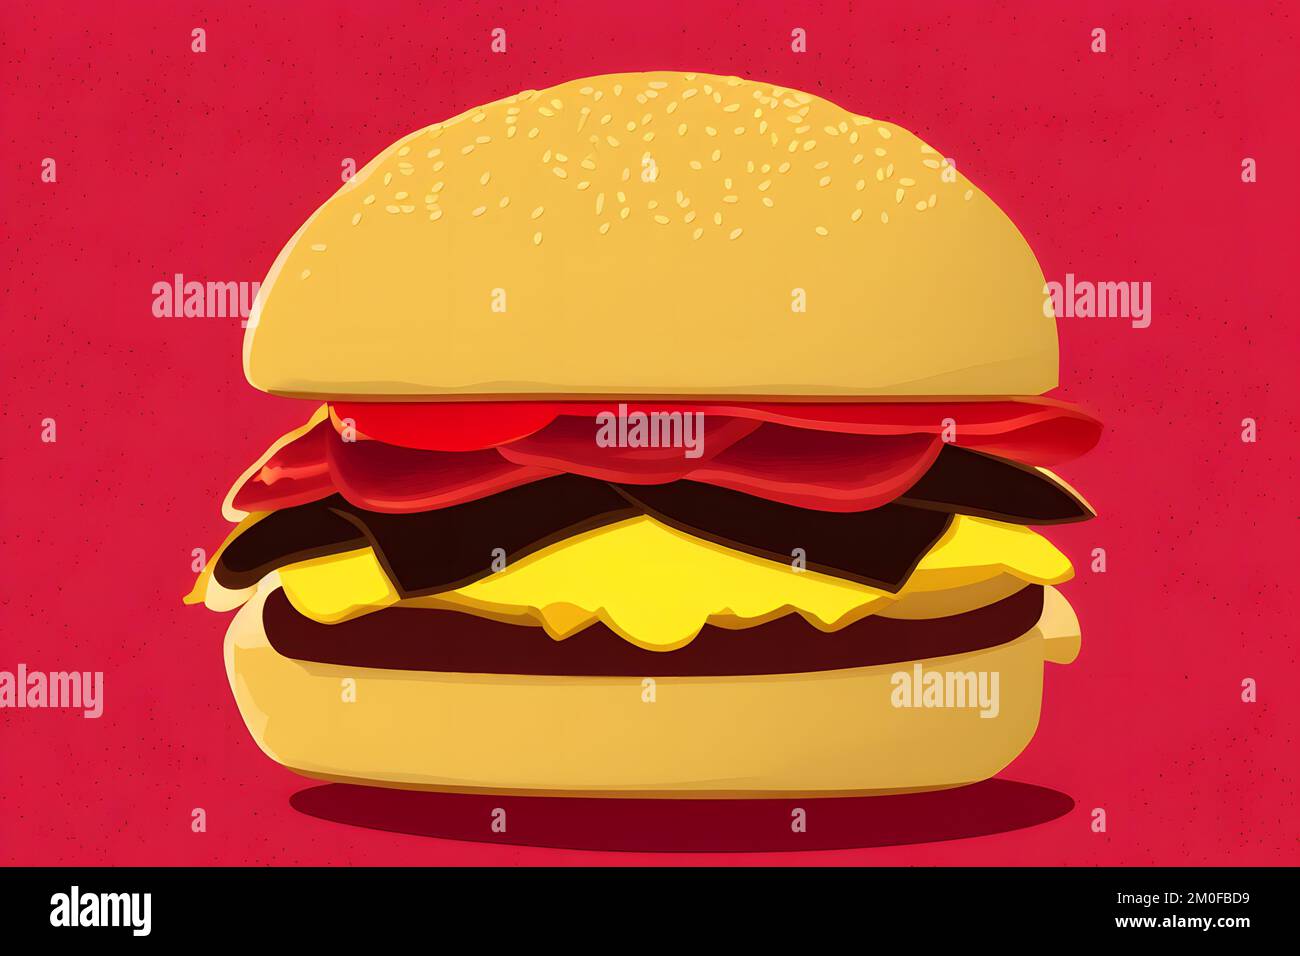 Illustration d'un hamburger de style rétro, un classique de restauration rapide Banque D'Images